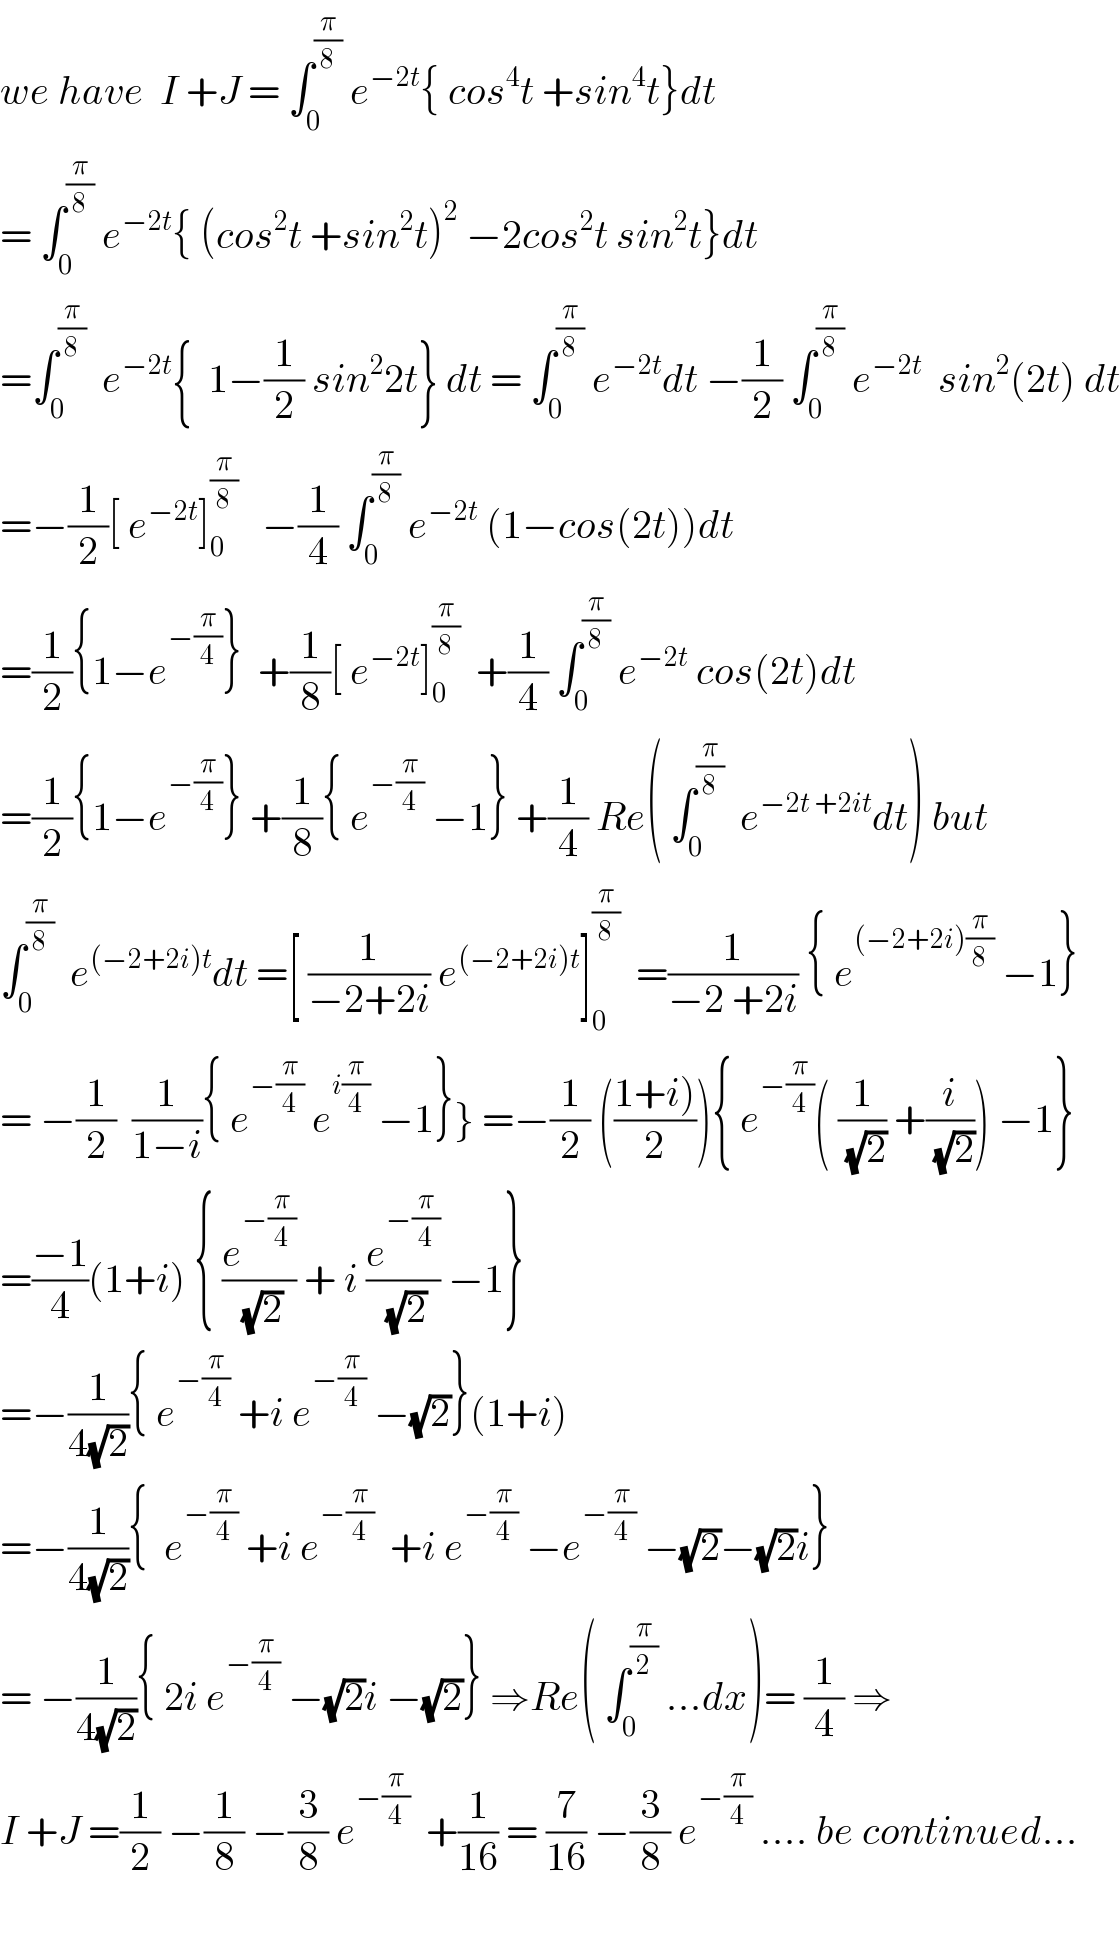 we have  I +J = ∫_0 ^(π/8)  e^(−2t) { cos^4 t +sin^4 t}dt  = ∫_0 ^(π/8)  e^(−2t) { (cos^2 t +sin^2 t)^2  −2cos^2 t sin^2 t}dt  =∫_0 ^(π/8)   e^(−2t) {  1−(1/2) sin^2 2t} dt = ∫_0 ^(π/8)  e^(−2t) dt −(1/2) ∫_0 ^(π/8)  e^(−2t)   sin^2 (2t) dt  =−(1/2)[ e^(−2t) ]_0 ^(π/8)    −(1/4) ∫_0 ^(π/8)  e^(−2t)  (1−cos(2t))dt  =(1/2){1−e^(−(π/4)) }  +(1/8)[ e^(−2t) ]_0 ^(π/8)   +(1/4) ∫_0 ^(π/8)  e^(−2t)  cos(2t)dt  =(1/2){1−e^(−(π/4)) } +(1/8){ e^(−(π/4))  −1} +(1/4) Re( ∫_0 ^(π/8)   e^(−2t +2it) dt) but  ∫_0 ^(π/8)   e^((−2+2i)t) dt =[ (1/(−2+2i)) e^((−2+2i)t) ]_0 ^(π/8)   =(1/(−2 +2i)) { e^((−2+2i)(π/8))  −1}  = −(1/2)  (1/(1−i)){ e^(−(π/4))  e^(i(π/4))  −1}} =−(1/2) (((1+i))/2)){ e^(−(π/4)) ( (1/(√2)) +(i/(√2))) −1}  =((−1)/4)(1+i) { (e^(−(π/4)) /(√2)) + i (e^(−(π/4)) /(√2)) −1}  =−(1/(4(√2))){ e^(−(π/4))  +i e^(−(π/4))  −(√2)}(1+i)  =−(1/(4(√2))){  e^(−(π/4))  +i e^(−(π/4))   +i e^(−(π/4))  −e^(−(π/4))  −(√2)−(√2)i}  = −(1/(4(√2))){ 2i e^(−(π/4))  −(√2)i −(√2)} ⇒Re( ∫_0 ^(π/2)  ...dx)= (1/4) ⇒   I +J =(1/2) −(1/8) −(3/8) e^(−(π/4))   +(1/(16)) = (7/(16)) −(3/8) e^(−(π/4))  .... be continued...    